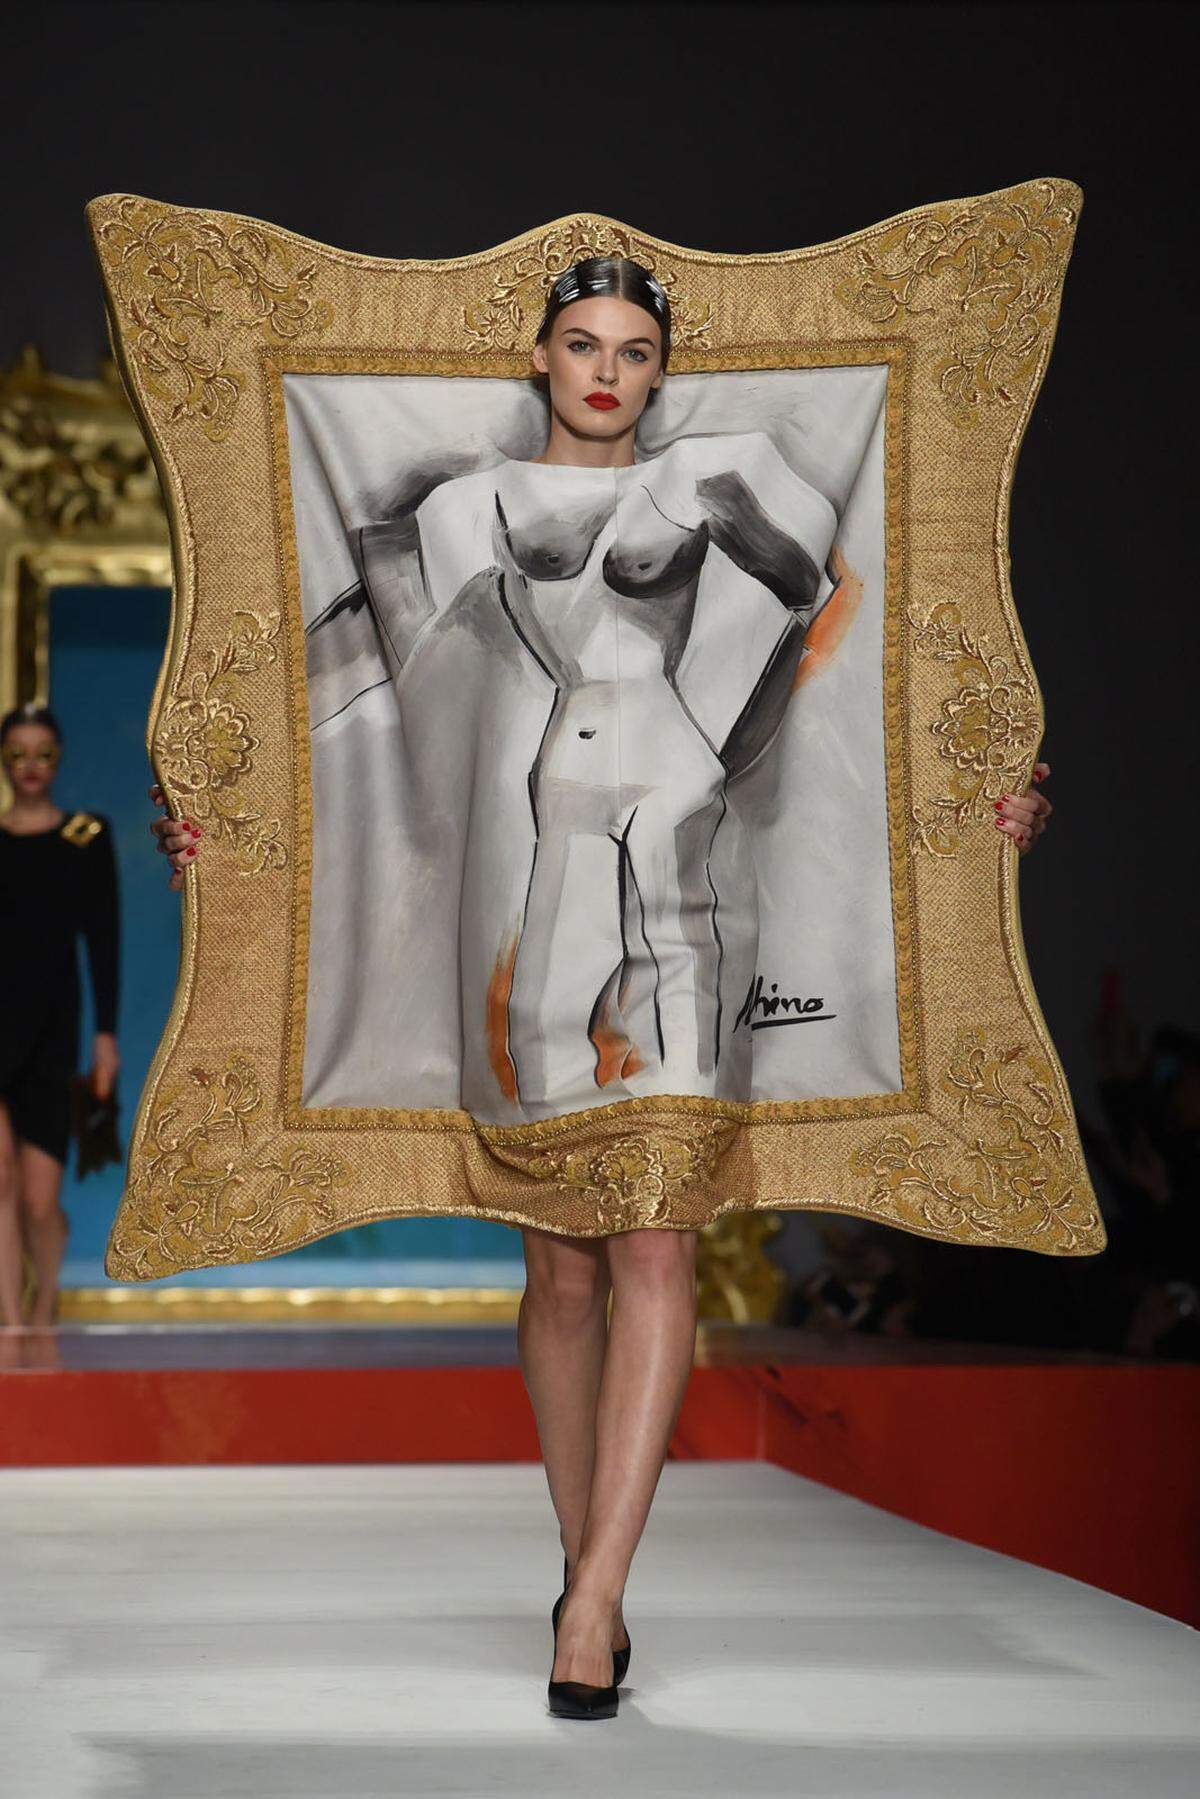 Model oder Gemälde? Jeremy Scott interpretierte Mode als Kunst ganz augenscheinlich.